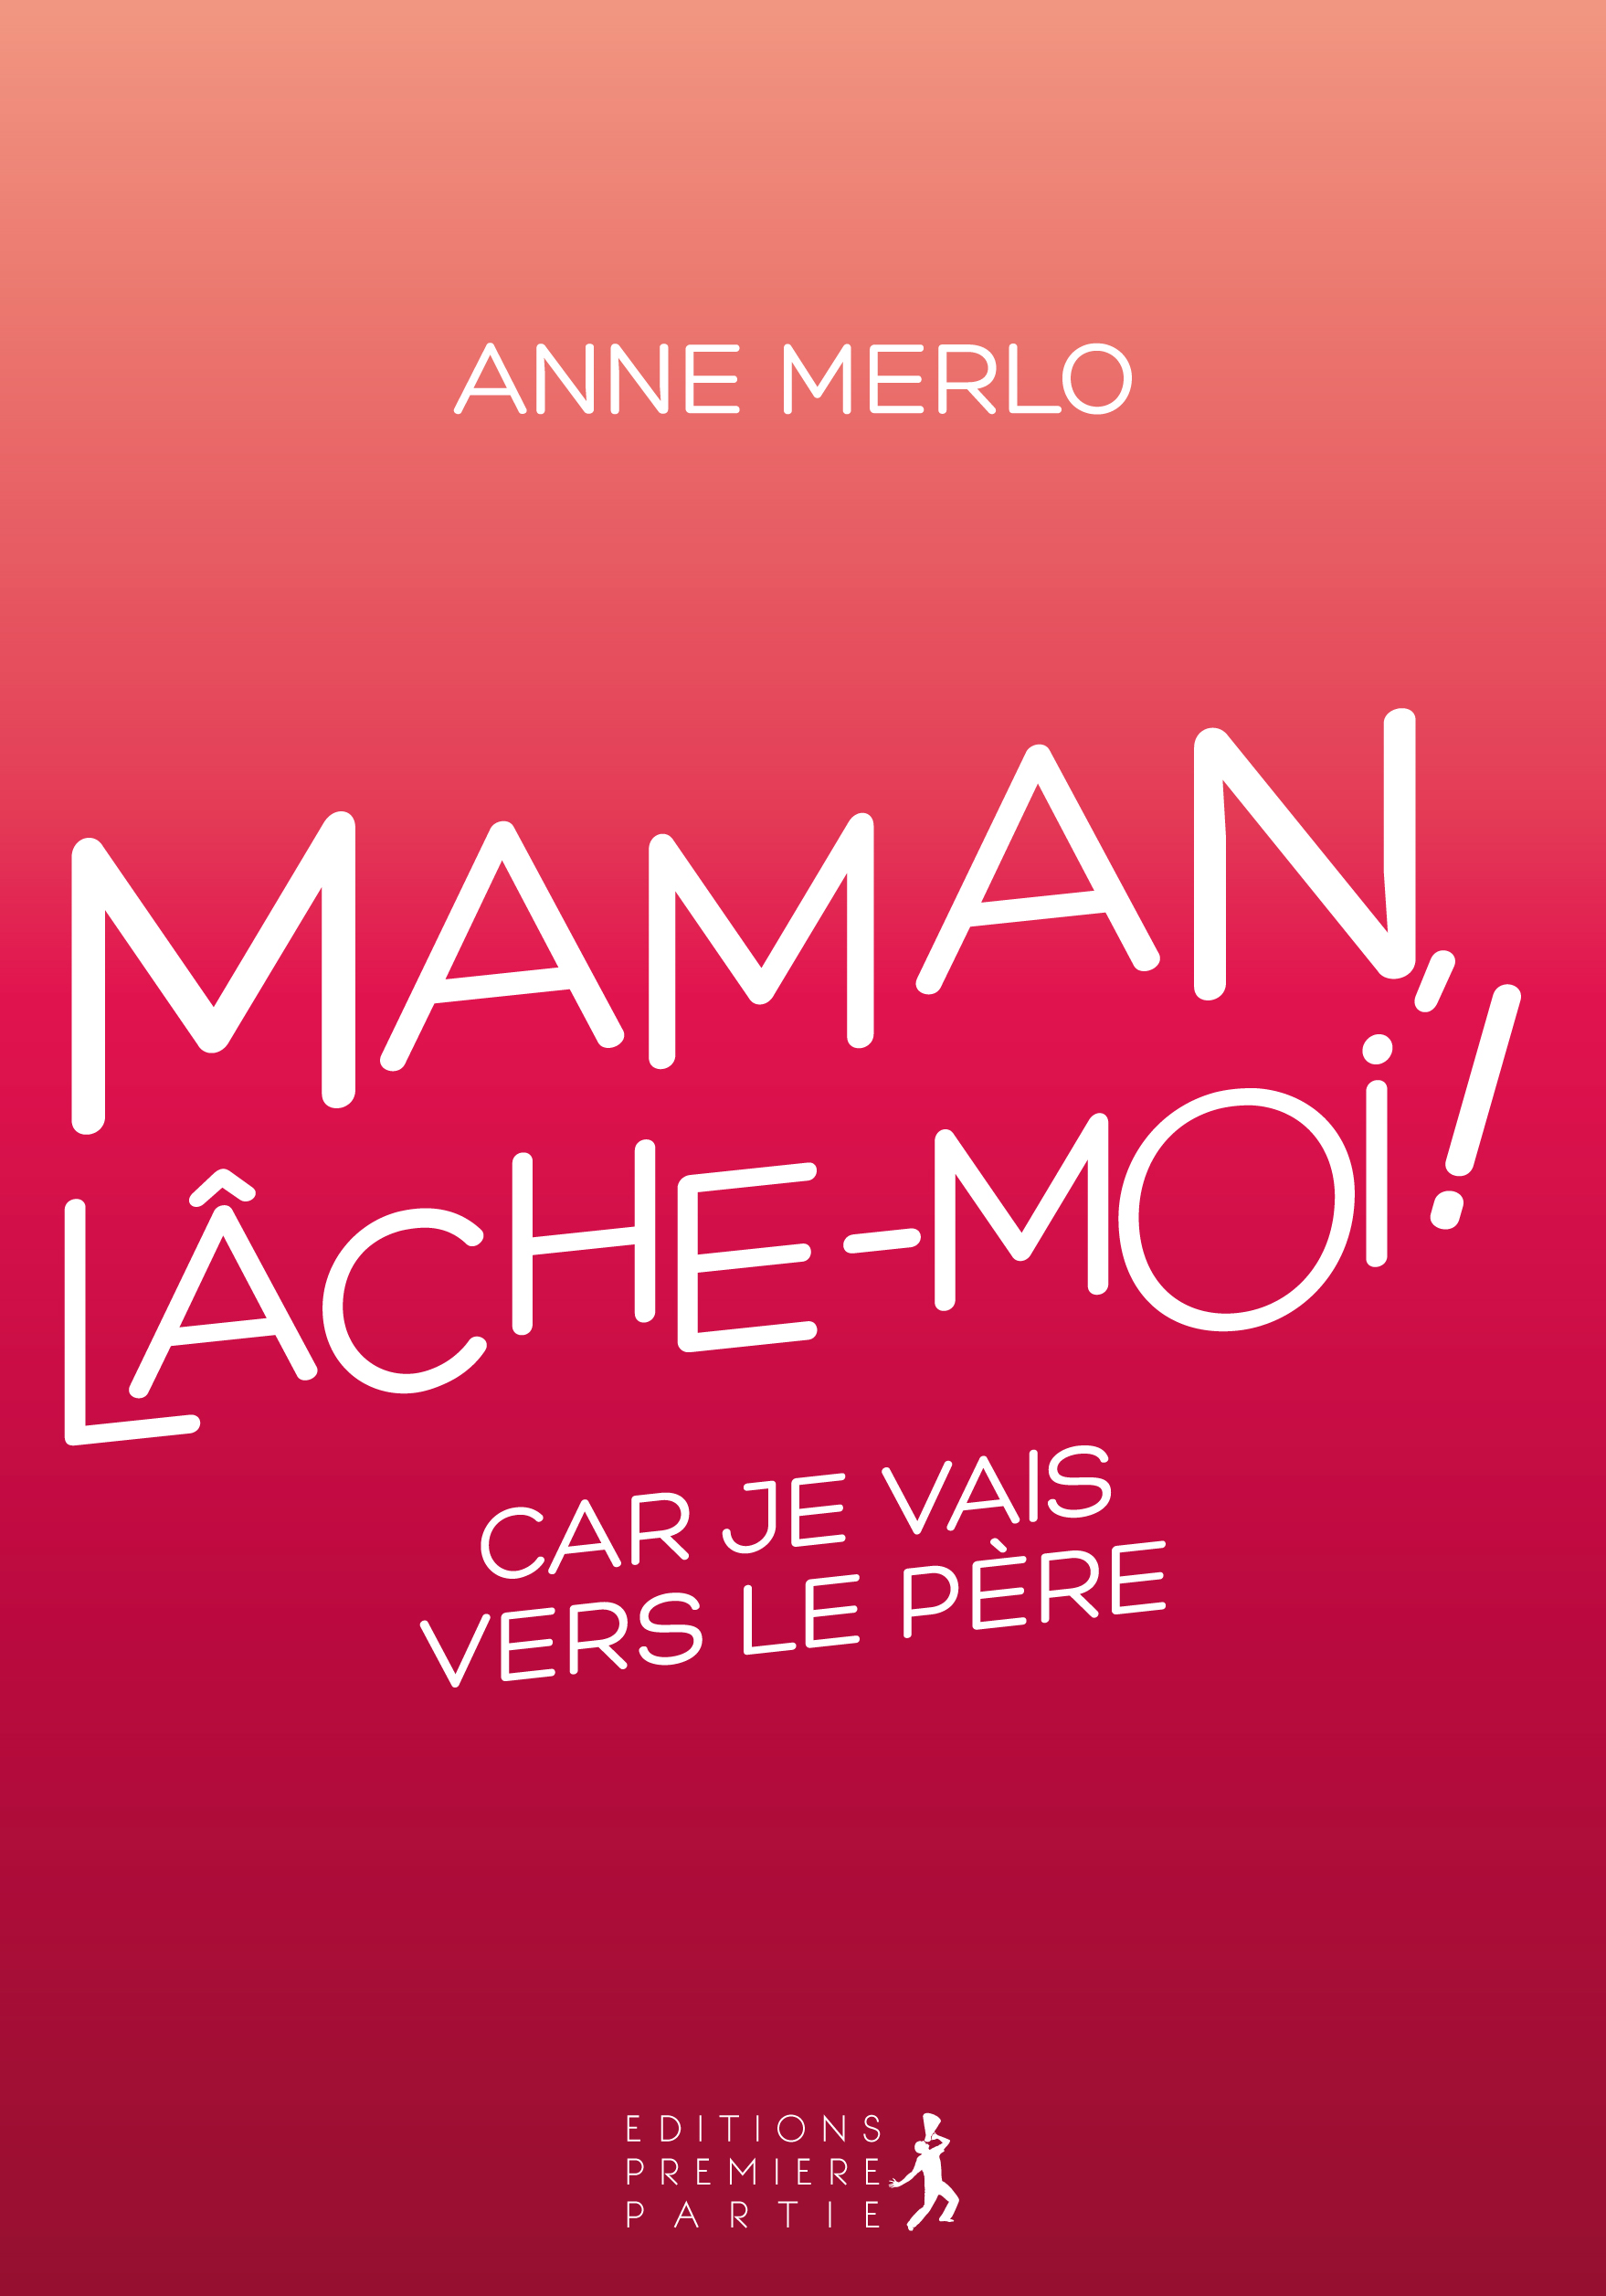 Anne Merlo "Maman, lâche-moi !"